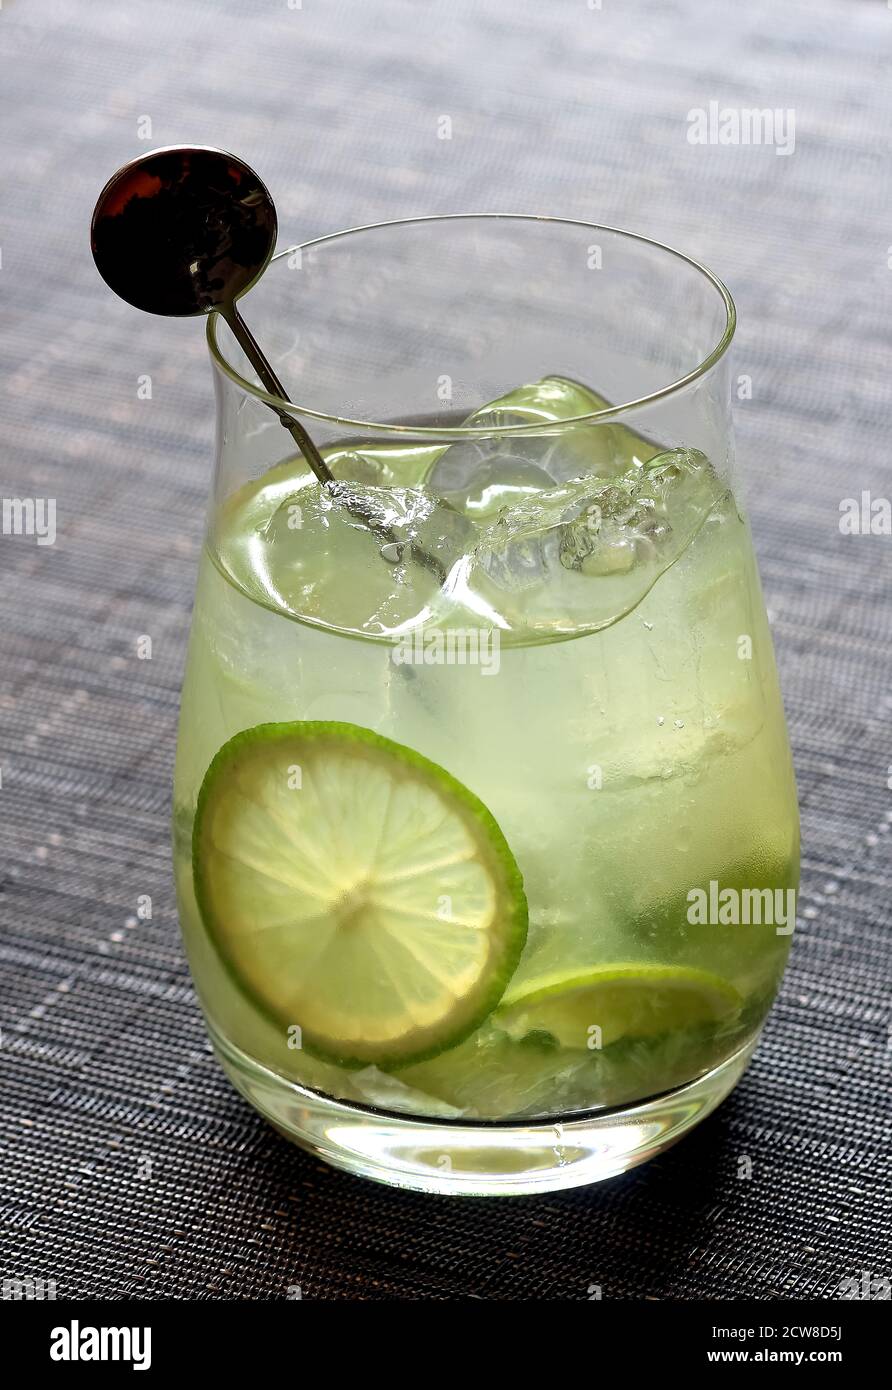 Caipiroska, boisson brésilienne avec vodka, citron et sucre Banque D'Images